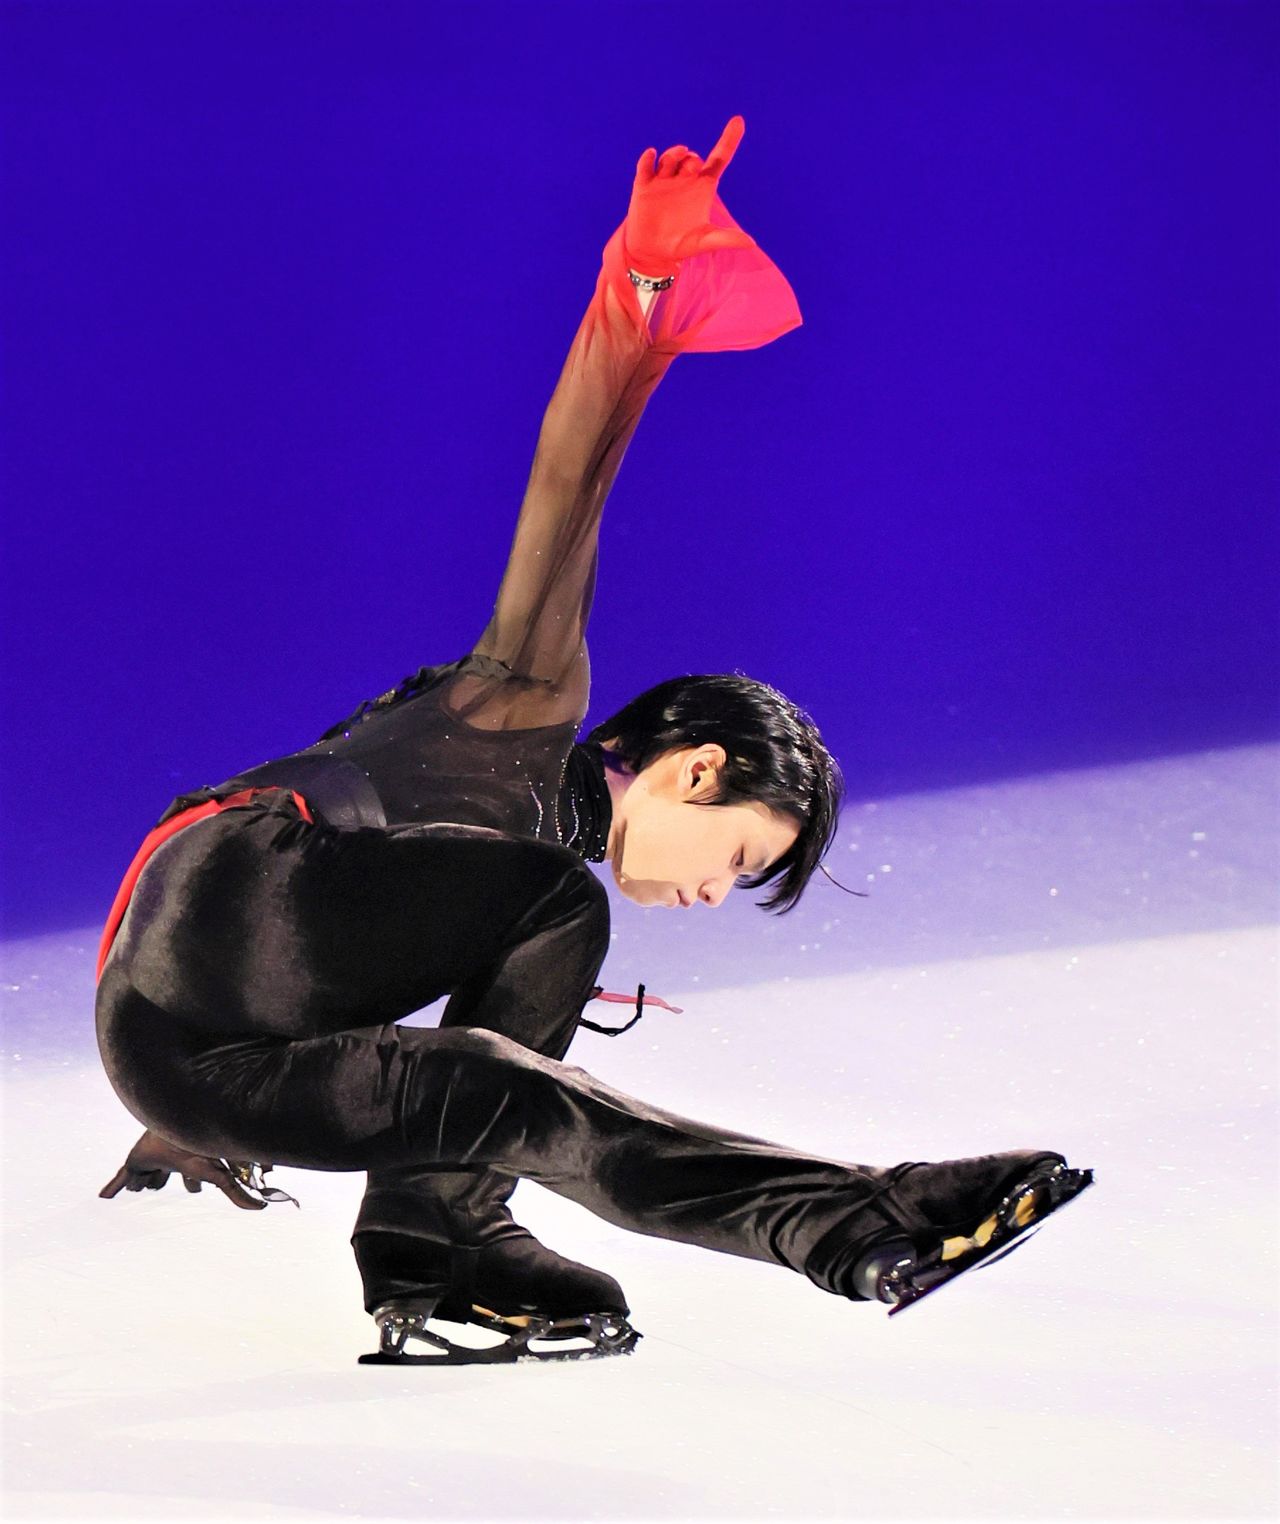 プロとして臨んだ初めてのショーで、羽生はブランクを感じさせない滑りを披露した（2022念11月4日、神奈川県・ぴあアリーナMM）時事